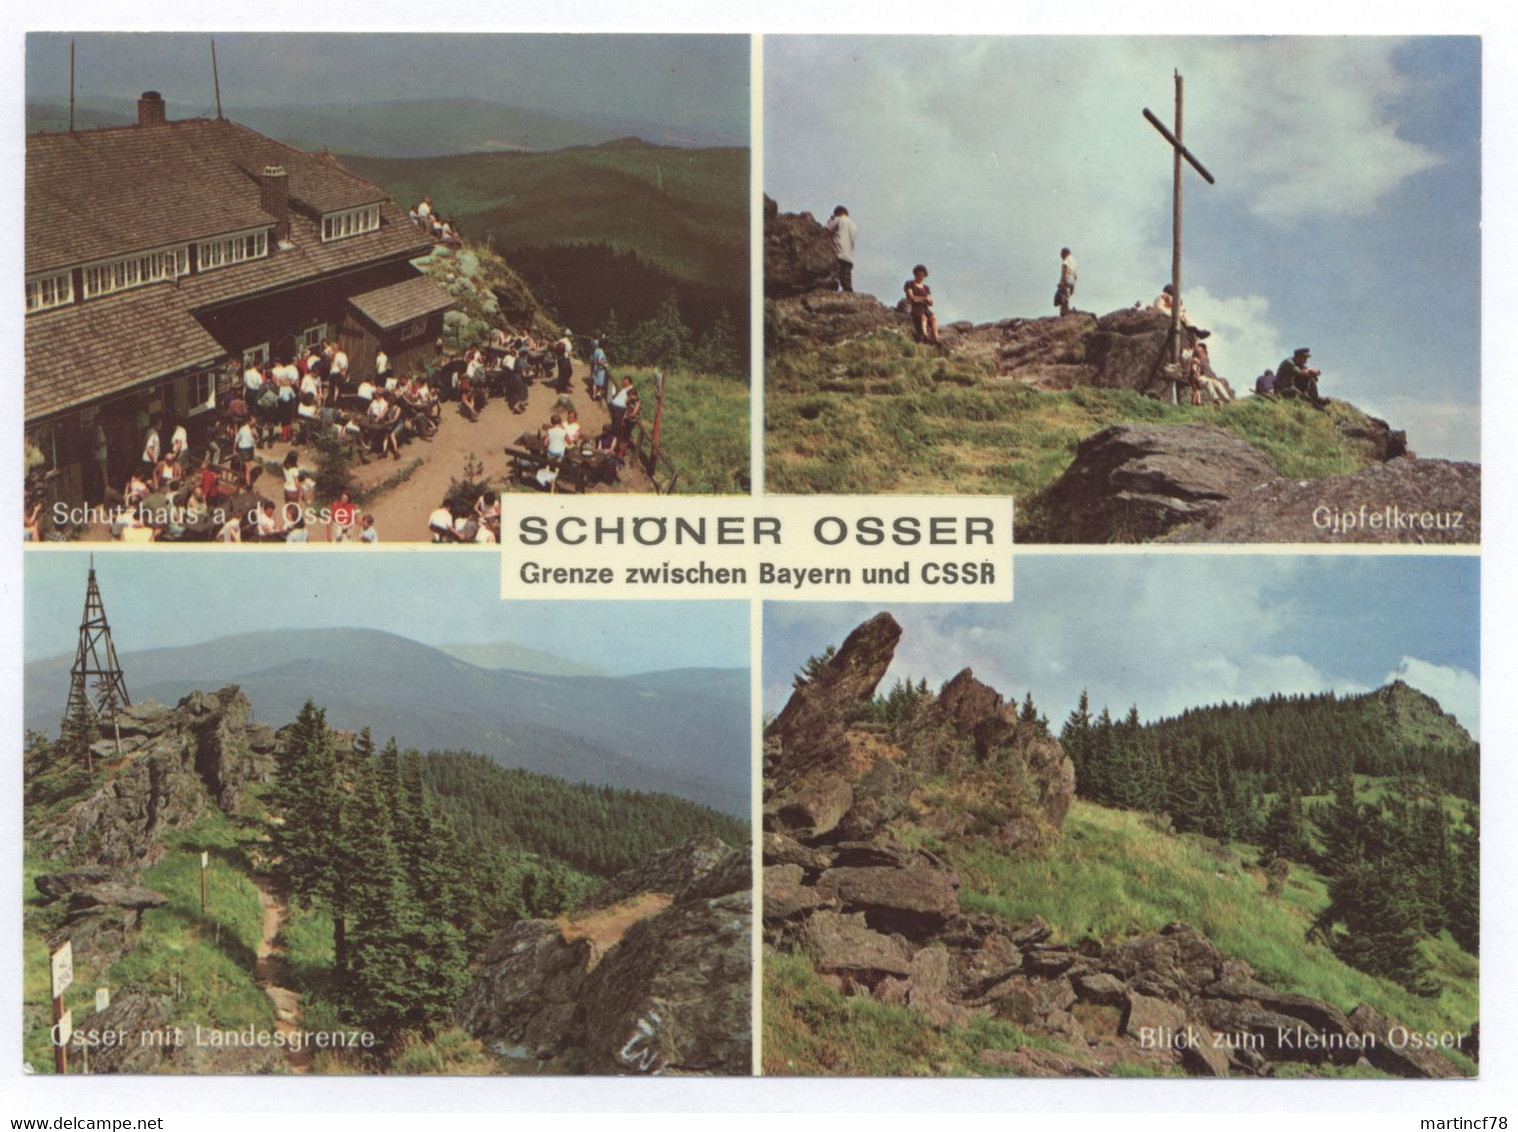 Schöner Osser Grenze Zwischen Bayern Und CSSR Schutzhaus A. D. Osser Gipfelkreuz Osser Mit Landesgrenze, Blick Zum - Cham